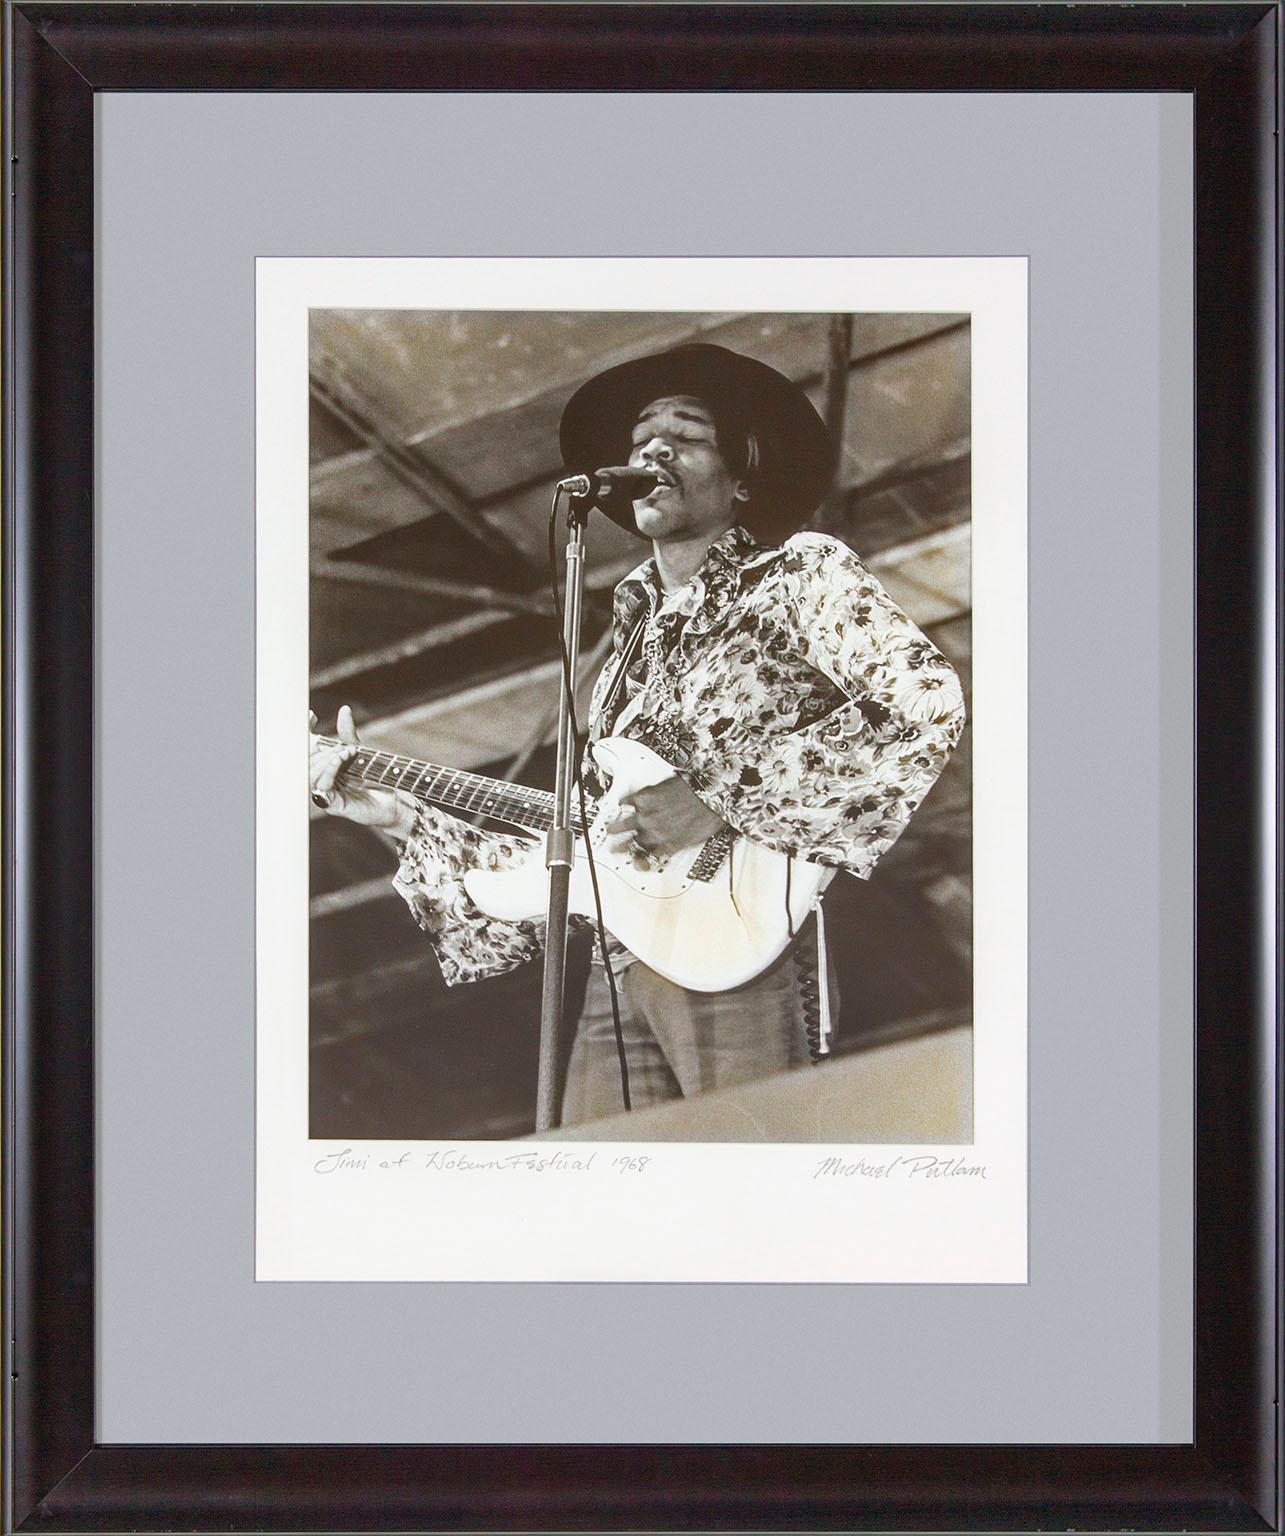 "Jimi at Woburn Festival 1968" gerahmte Schwarz-Weiß-Fotografie von Michael Putland von Jimi Hendrix auf dem Woburn Music Festival in England am 6. Juli 1968.  "Jimi at Woburn Festival 1968" handschriftlich auf der Vorderseite unten links. "Michael